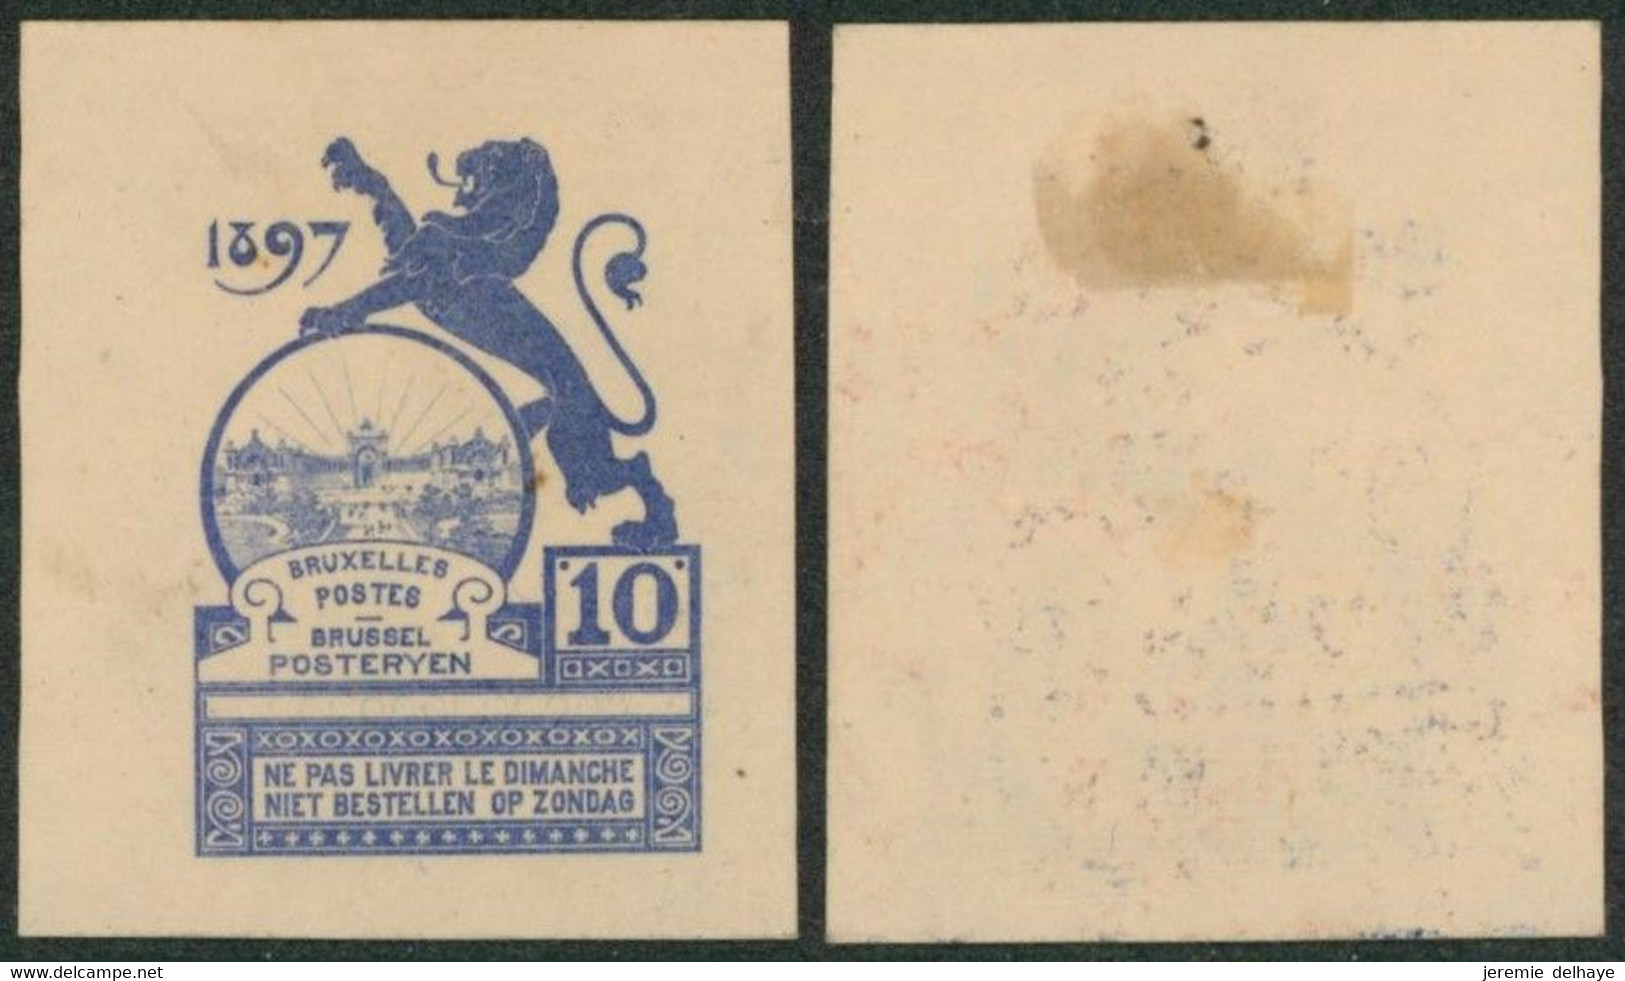 Essai - Proposition Du Peintre Louis Titz (Bruxelles Expositions 1897) Sur Papier Japon épais (1 Couleur) : STES 2223 - Proofs & Reprints